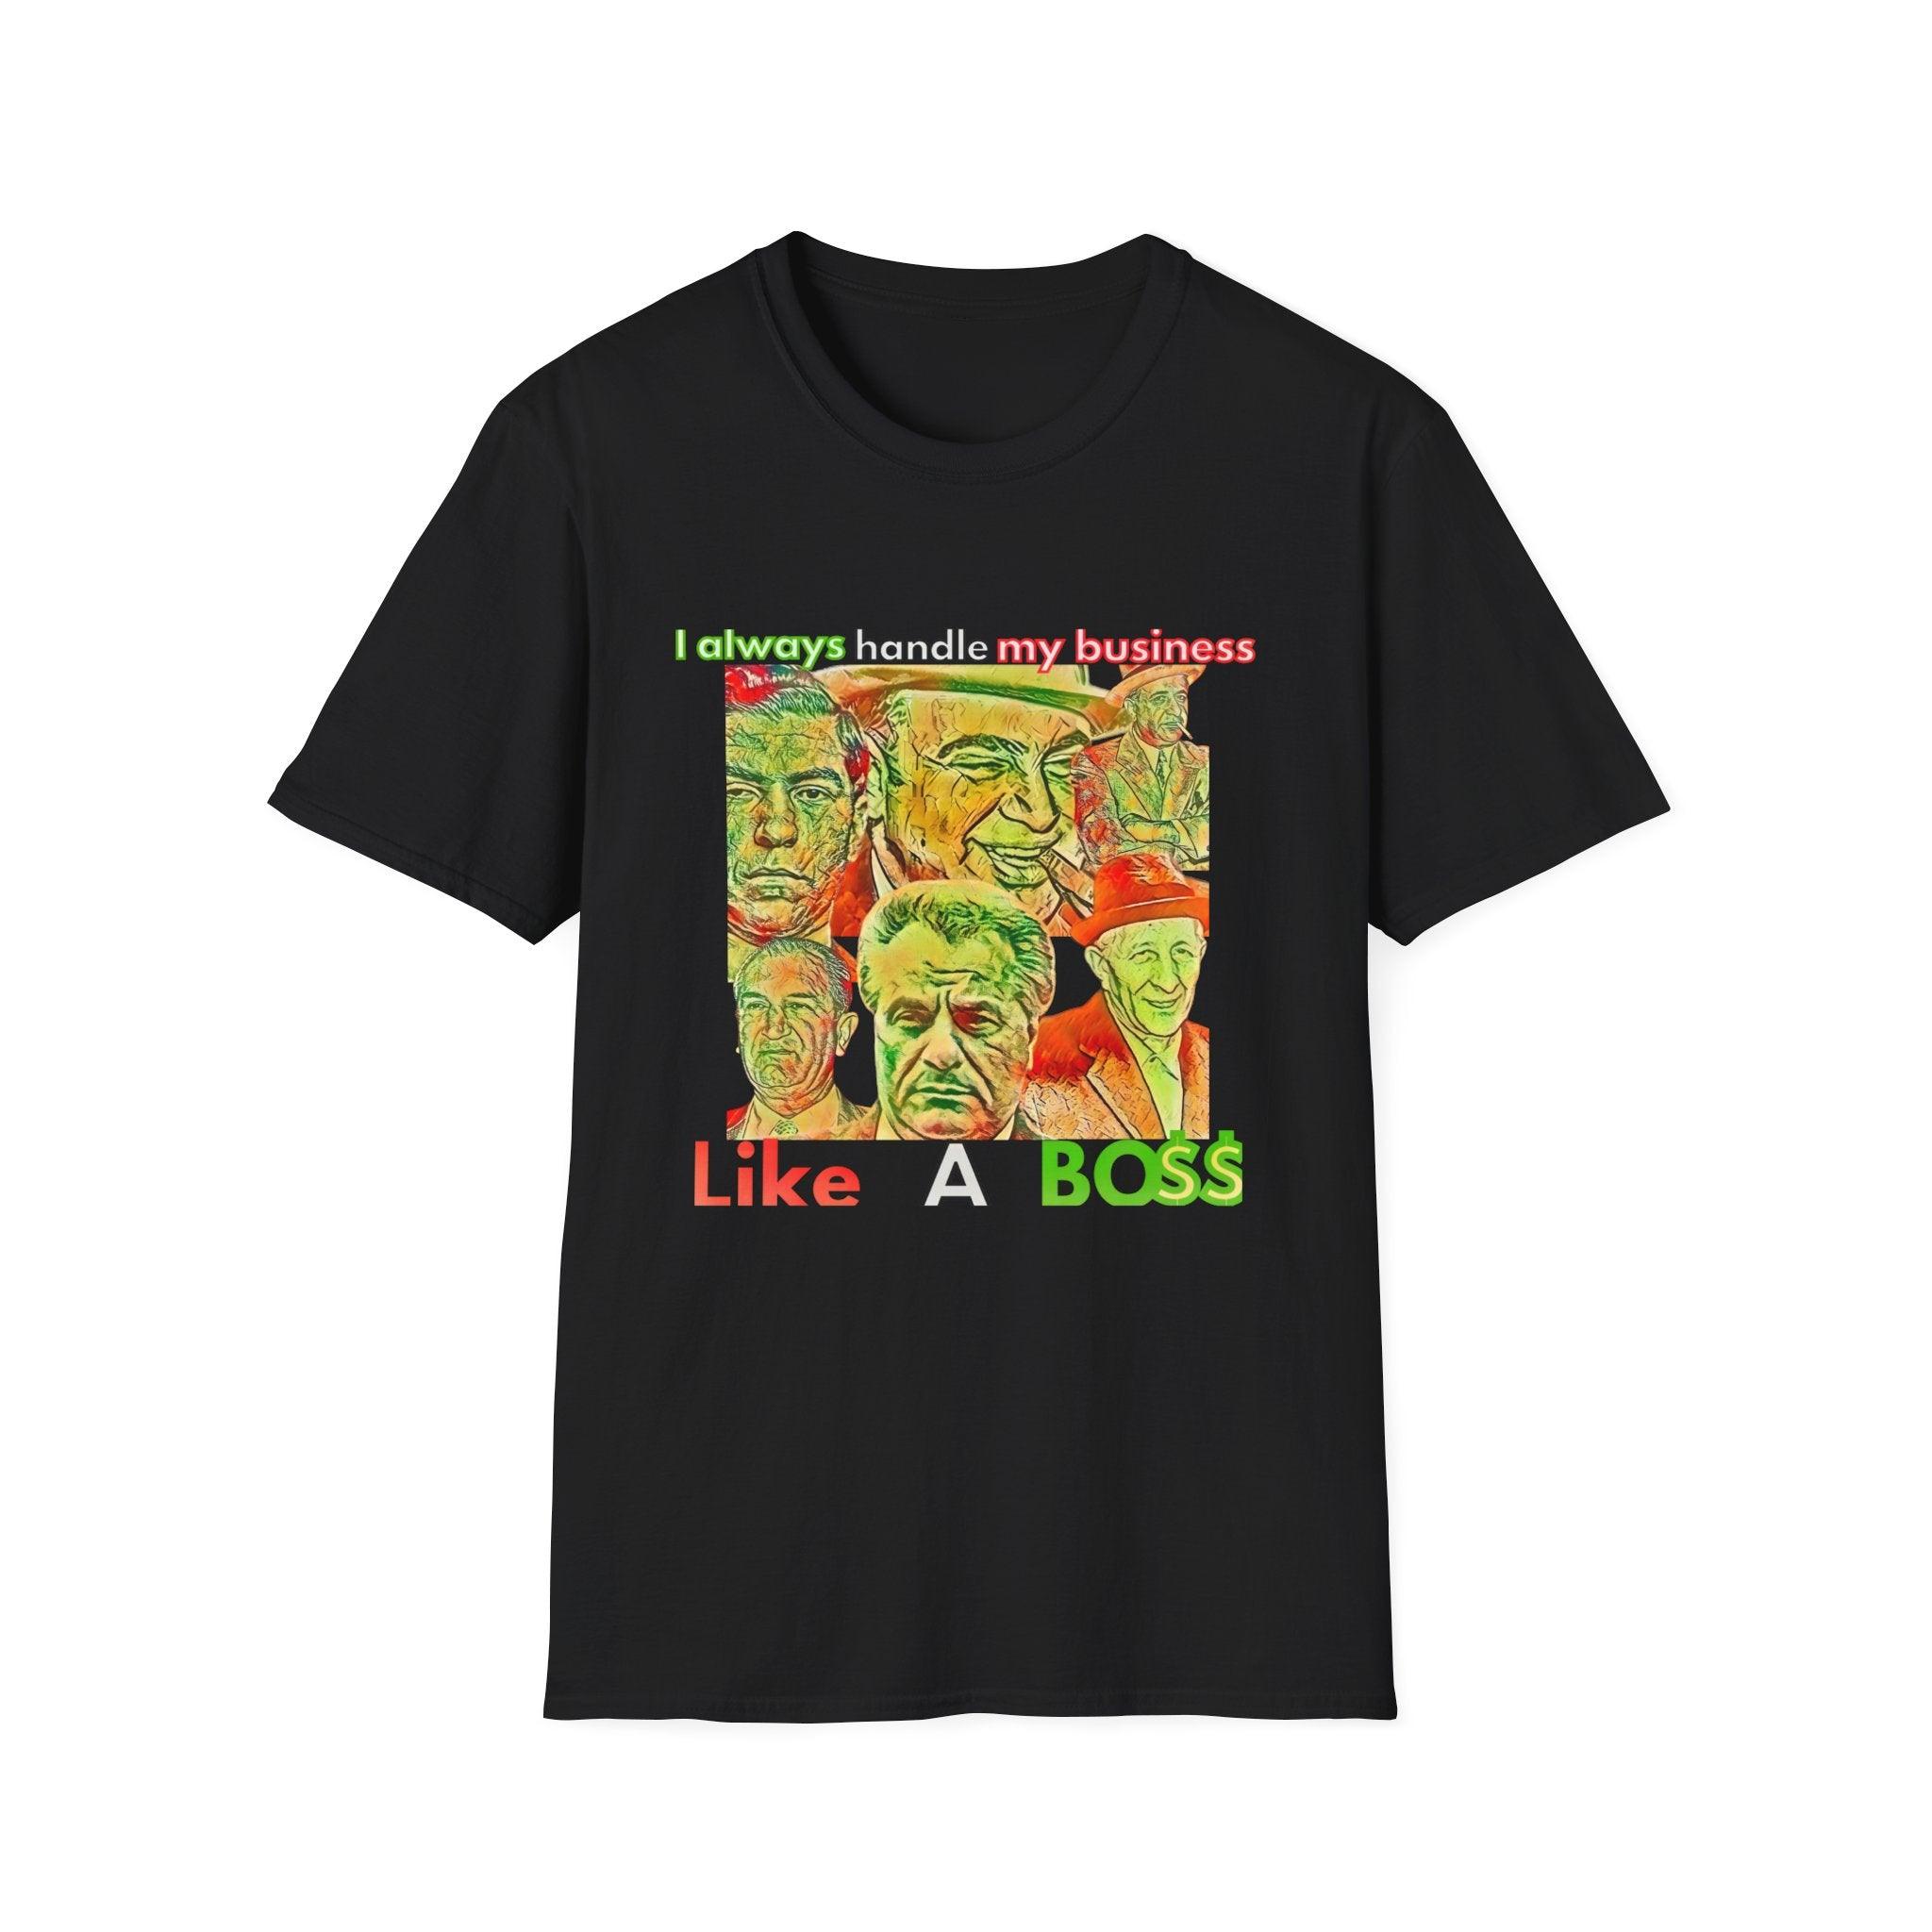 Like a boss T-shirt - Epic Shirts 403